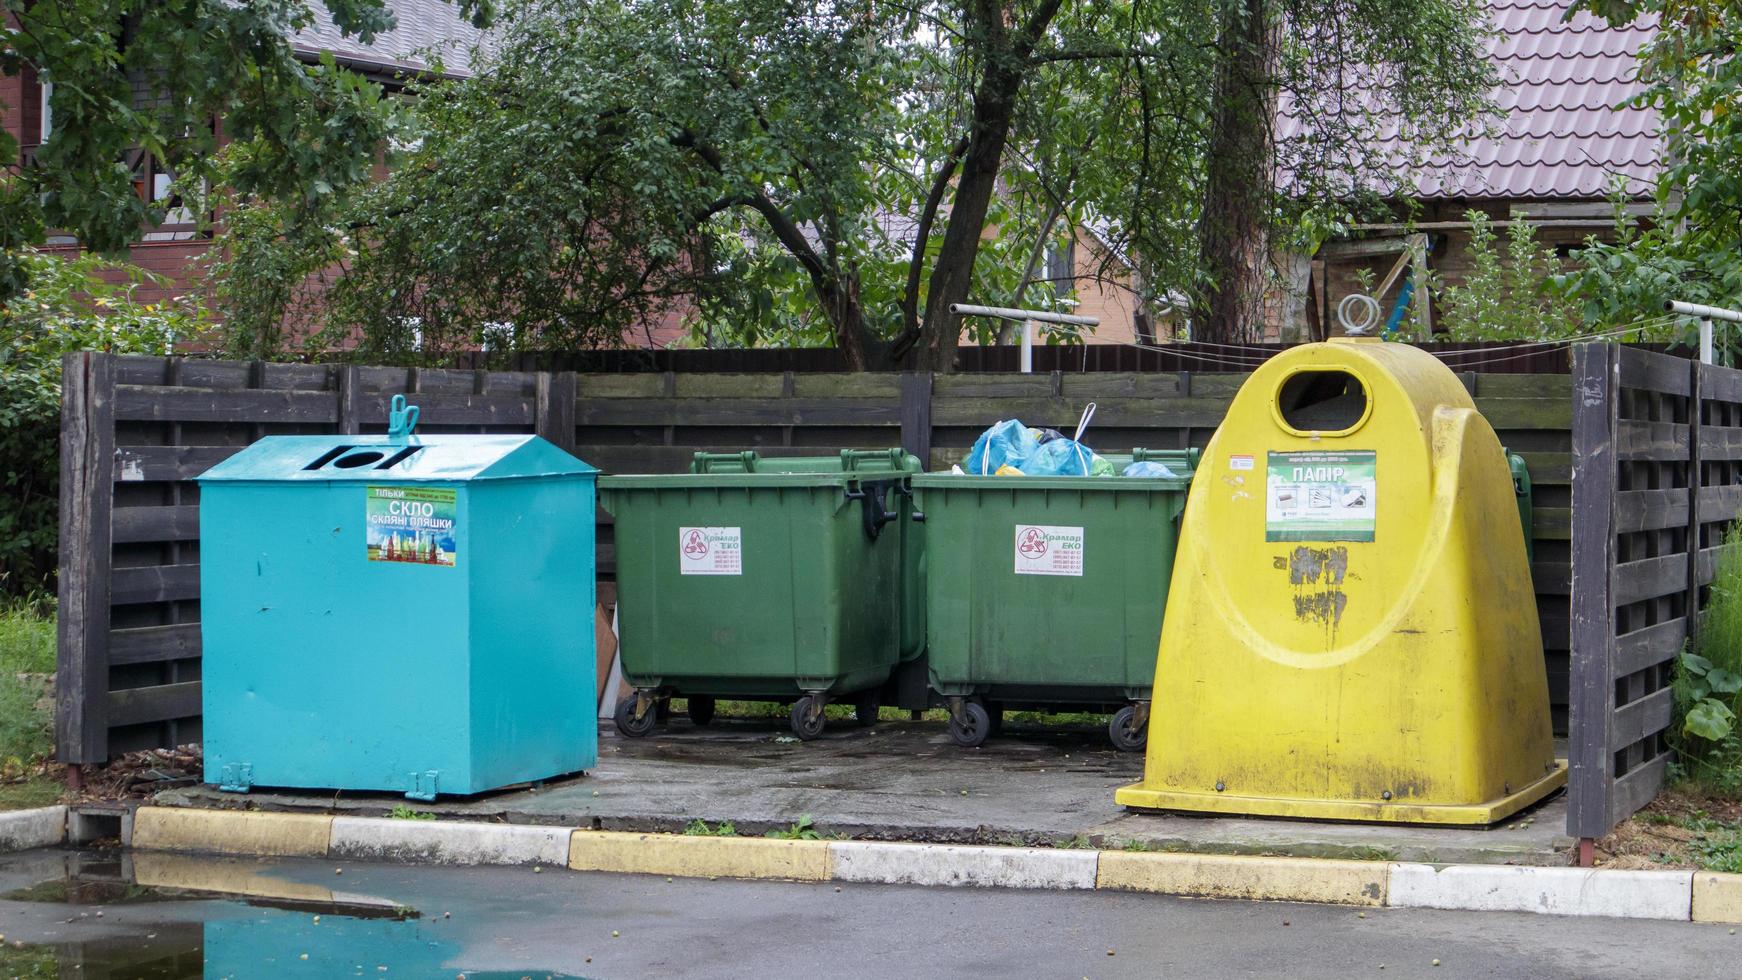 vier plastic en metalen vuilnisbakken voor het sorteren van afval op de binnenplaats van een woonstraat. vuilnisbakken op de binnenplaats van een woongebouw. Oekraïne, Kiev - 29 augustus 2021. foto